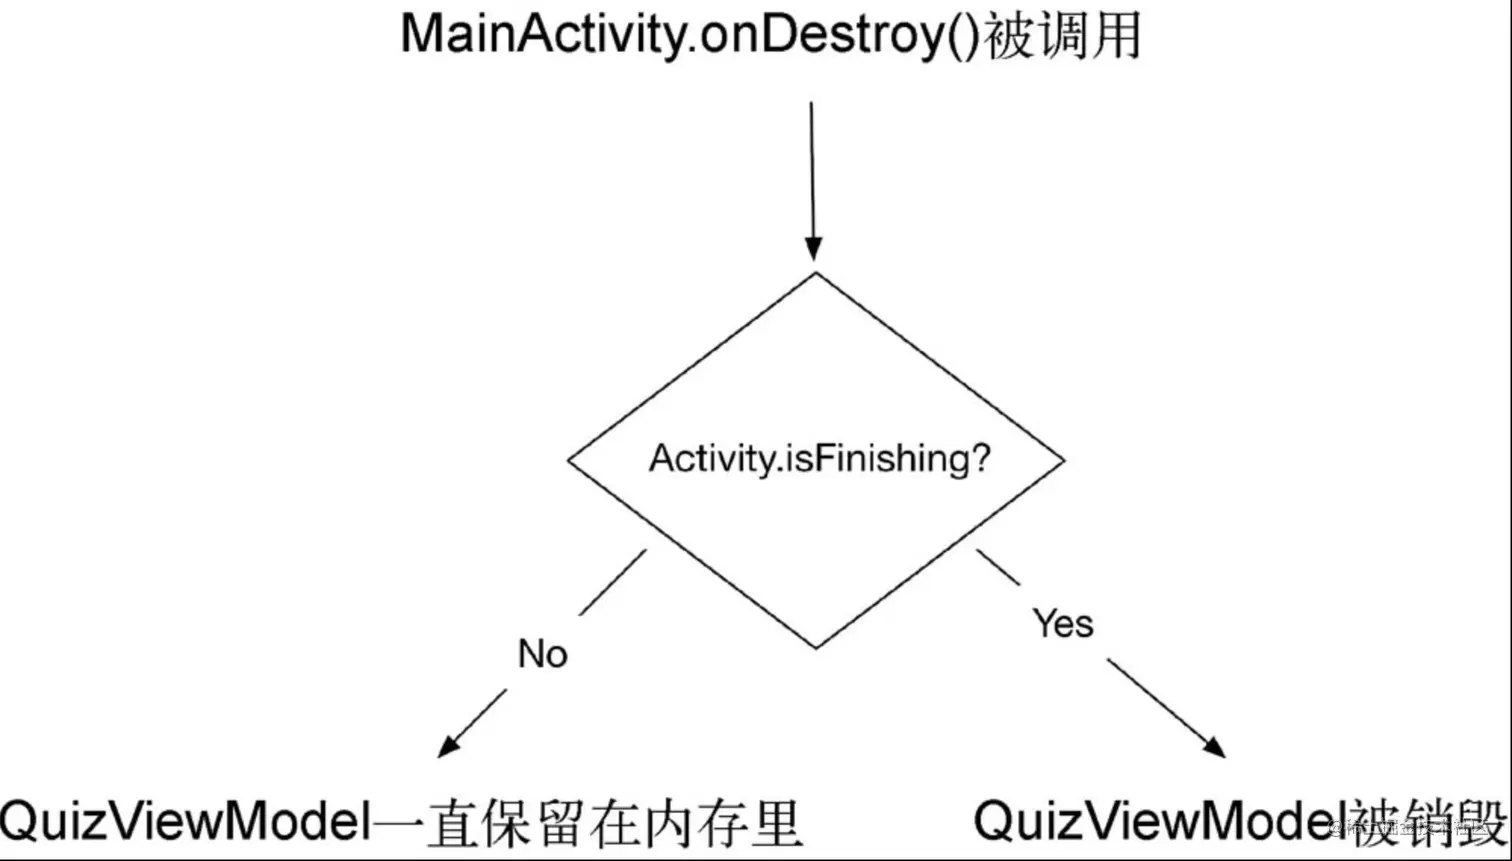 QuizViewModel和MainActivity步调一致